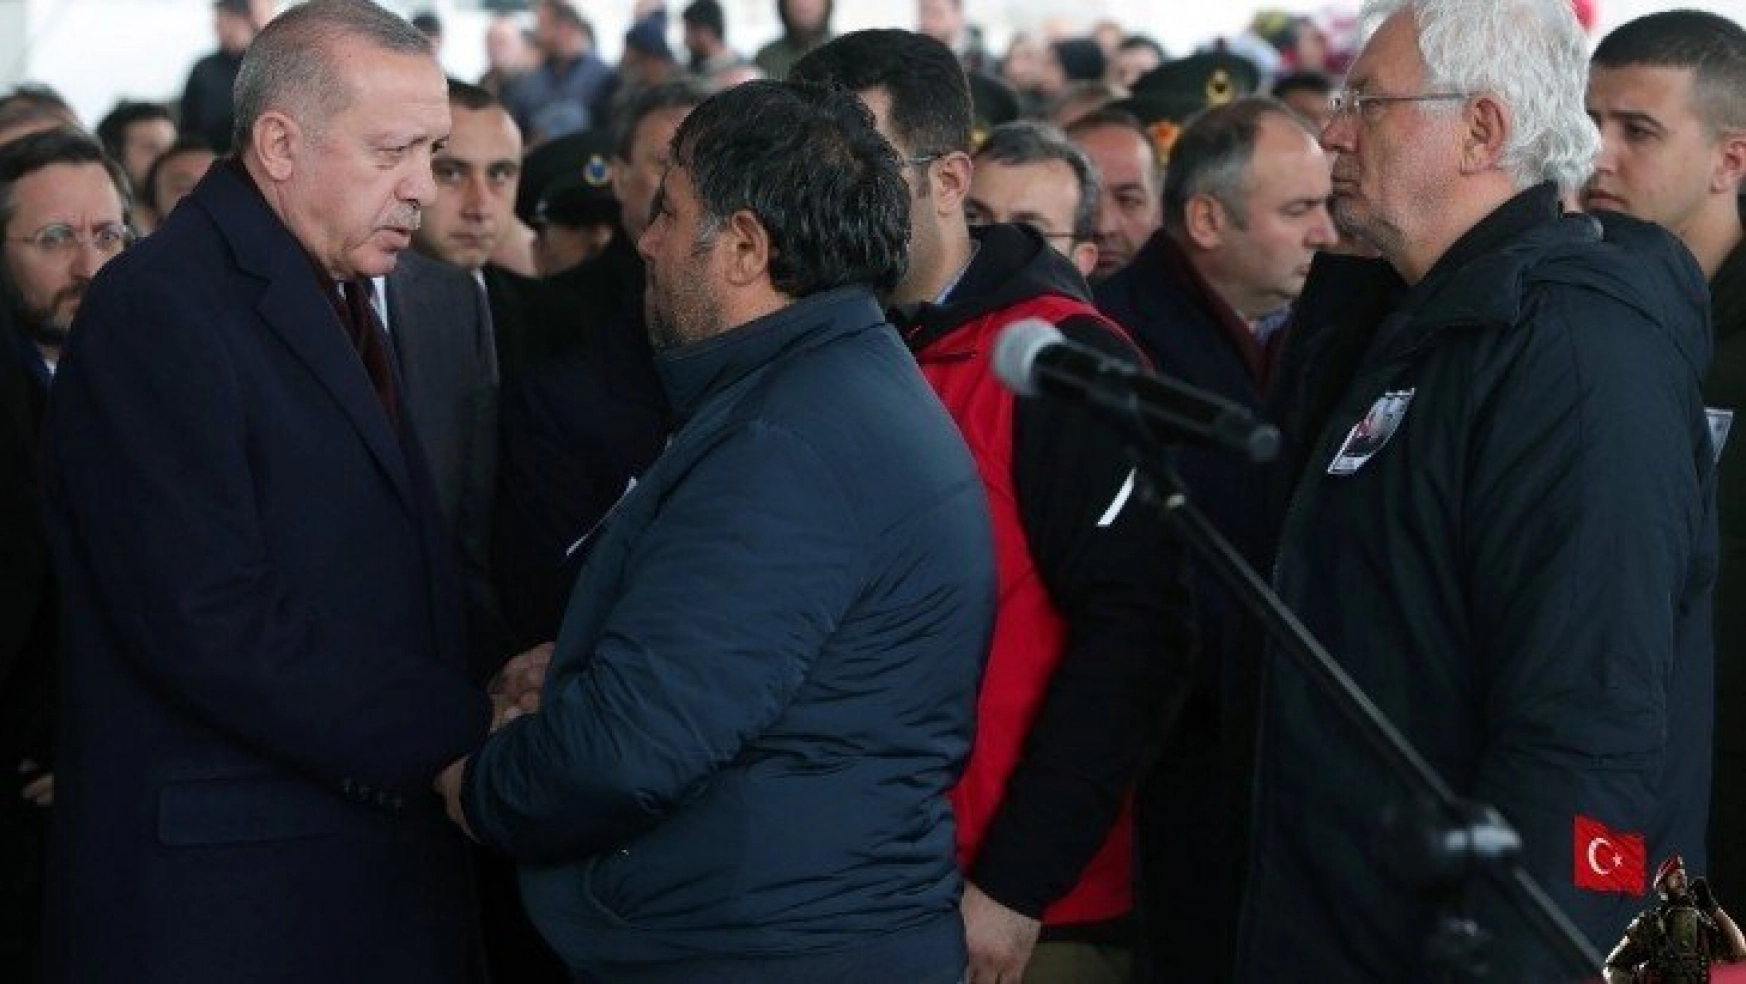 Cumhurbaşkanı Erdoğan, İdlib şehidinin cenazesine katıldı